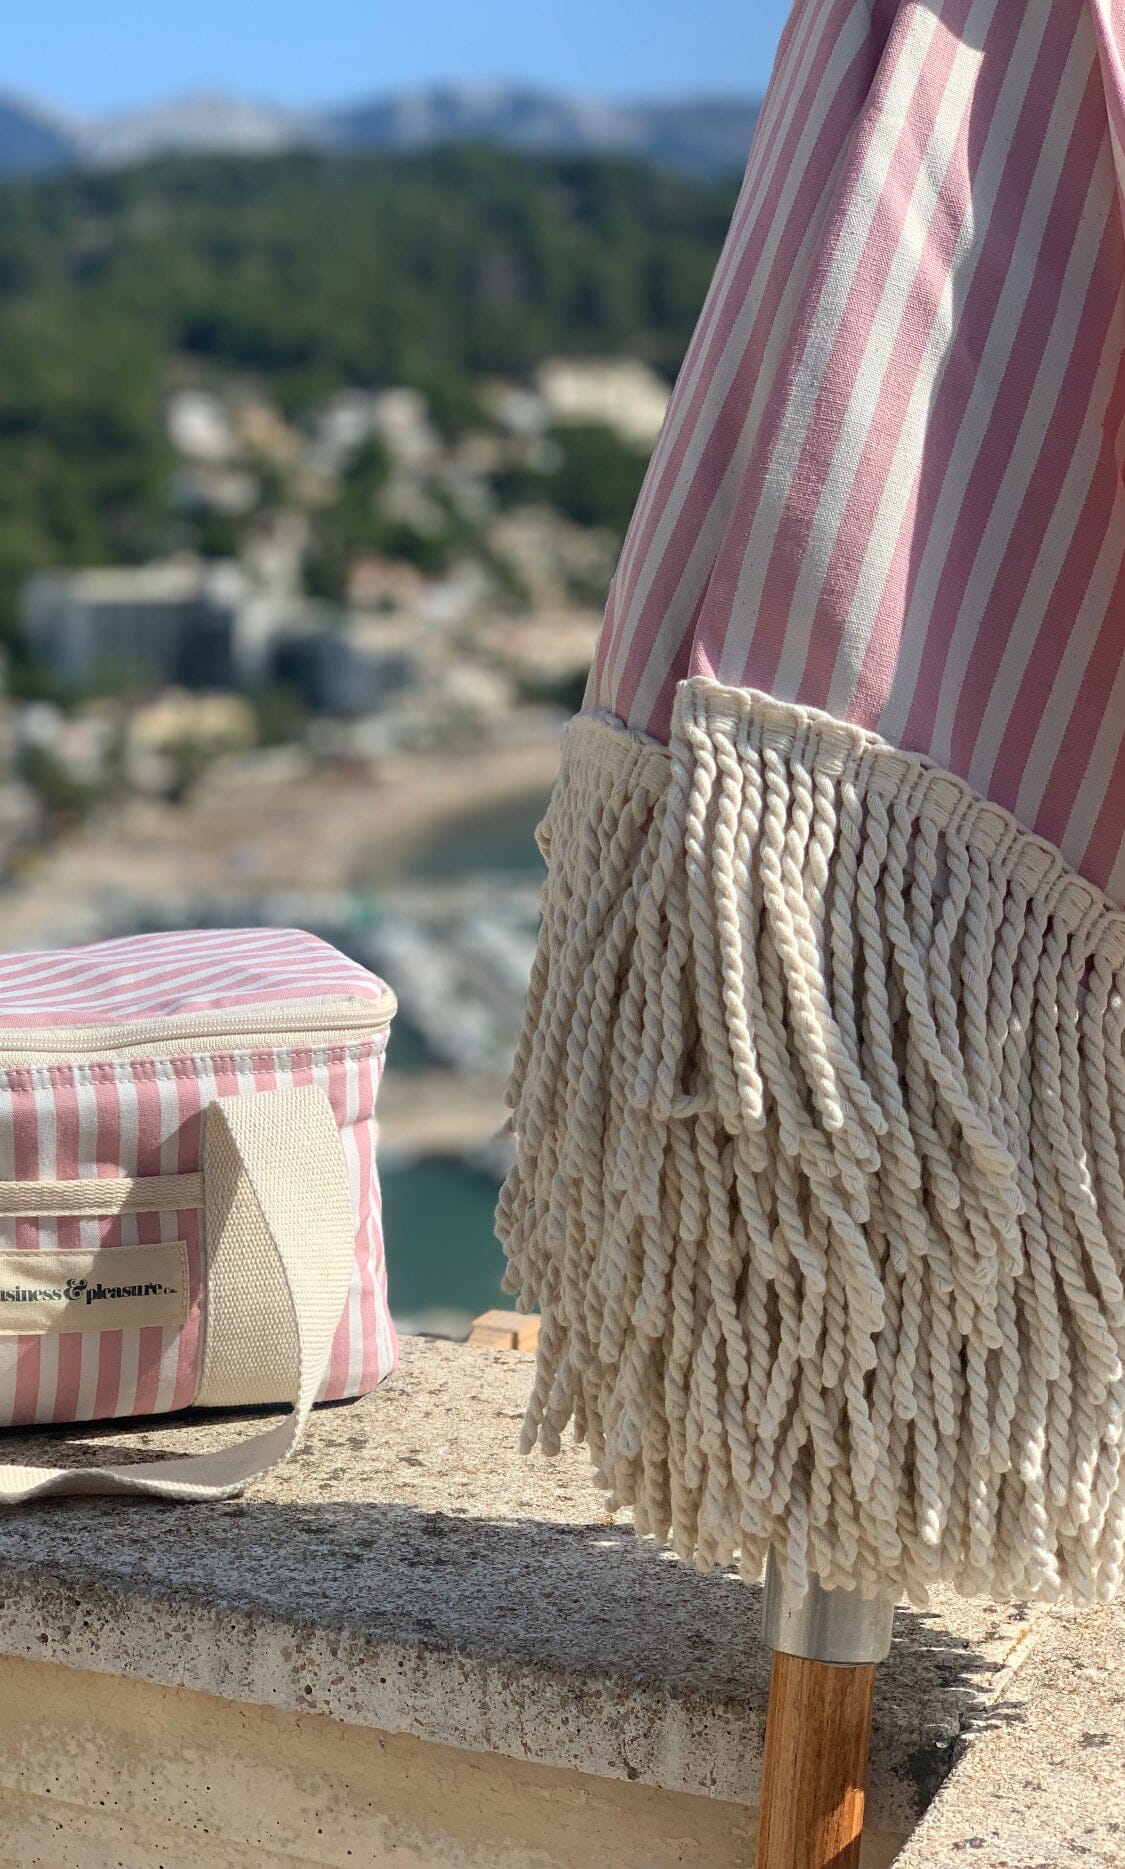 The Premium Cooler Bag - Lauren's Pink Stripe